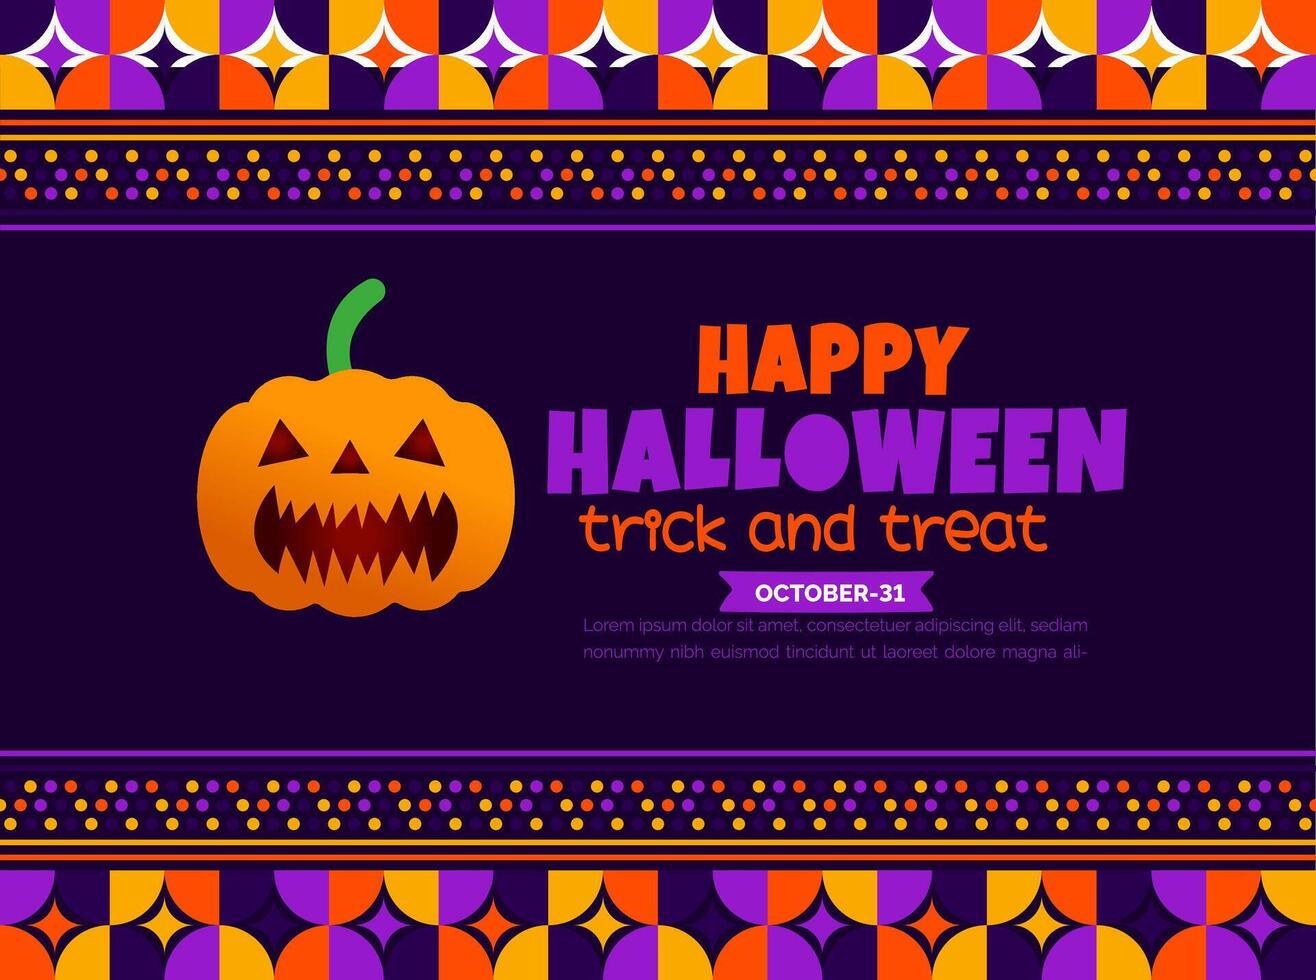 31 oktober Lycklig halloween bakgrund design med pumpor. använda sig av till bakgrund, baner, plakat, fest inbjudan kort, bok omslag och affisch design mall med text inskrift och standard Färg. vektor